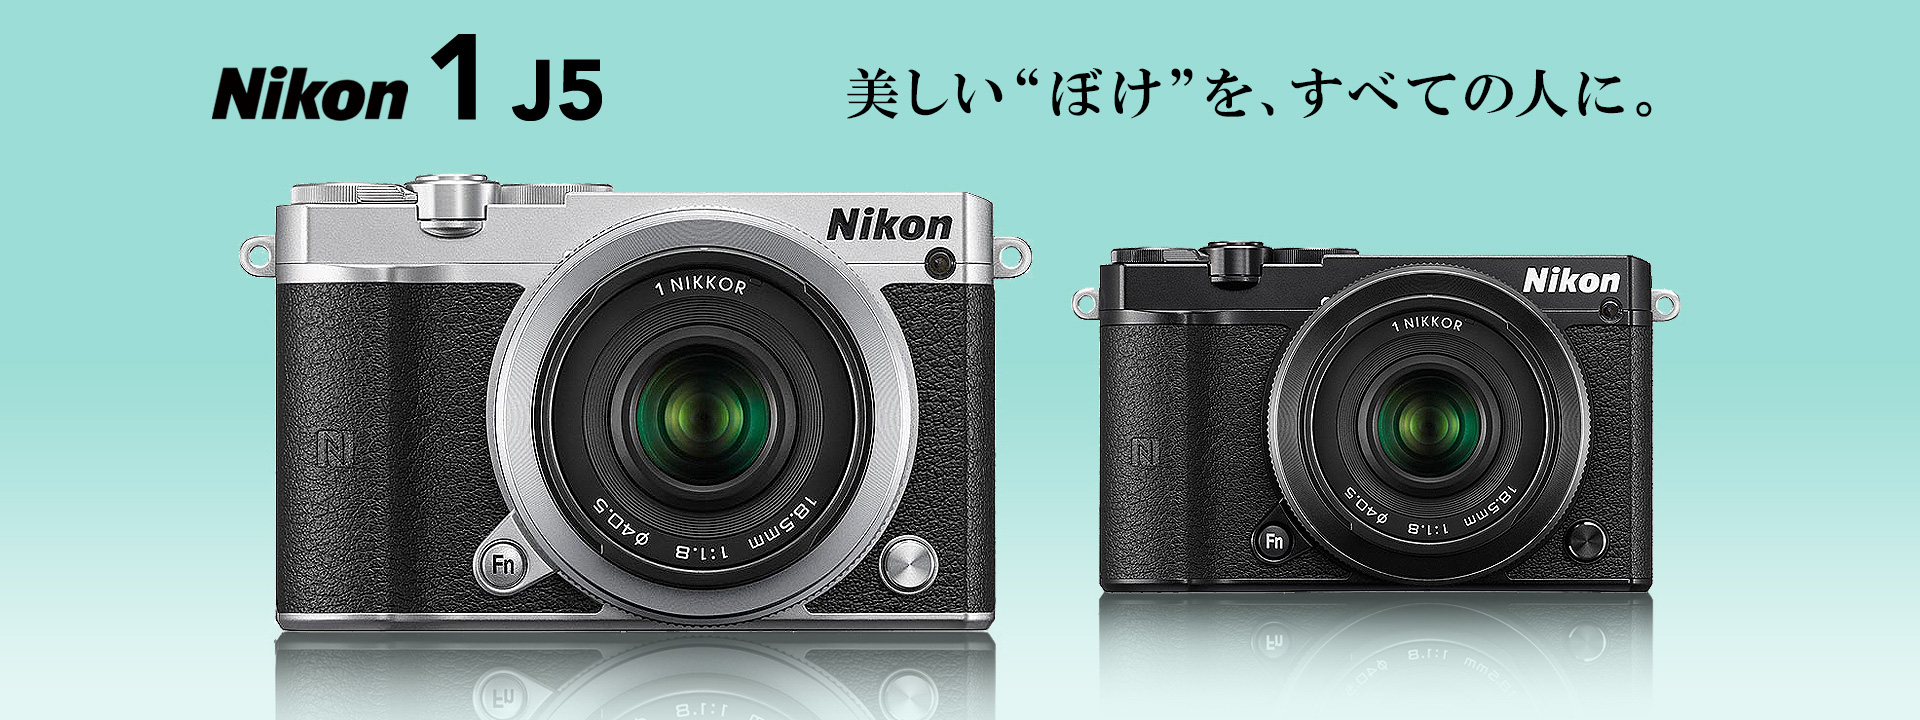 [美品] Nikon 1 J5 一眼ミラーレス